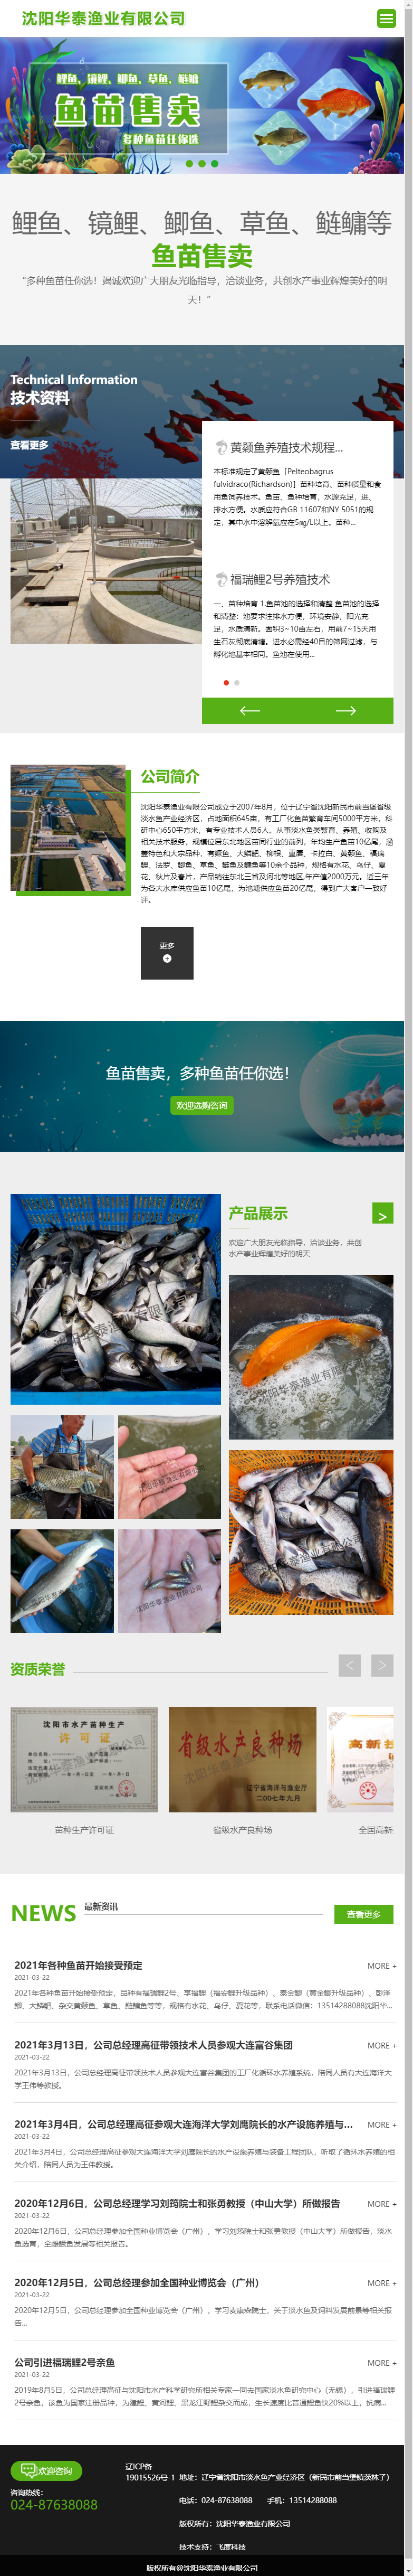 沈阳华泰渔业有限公司网站案例